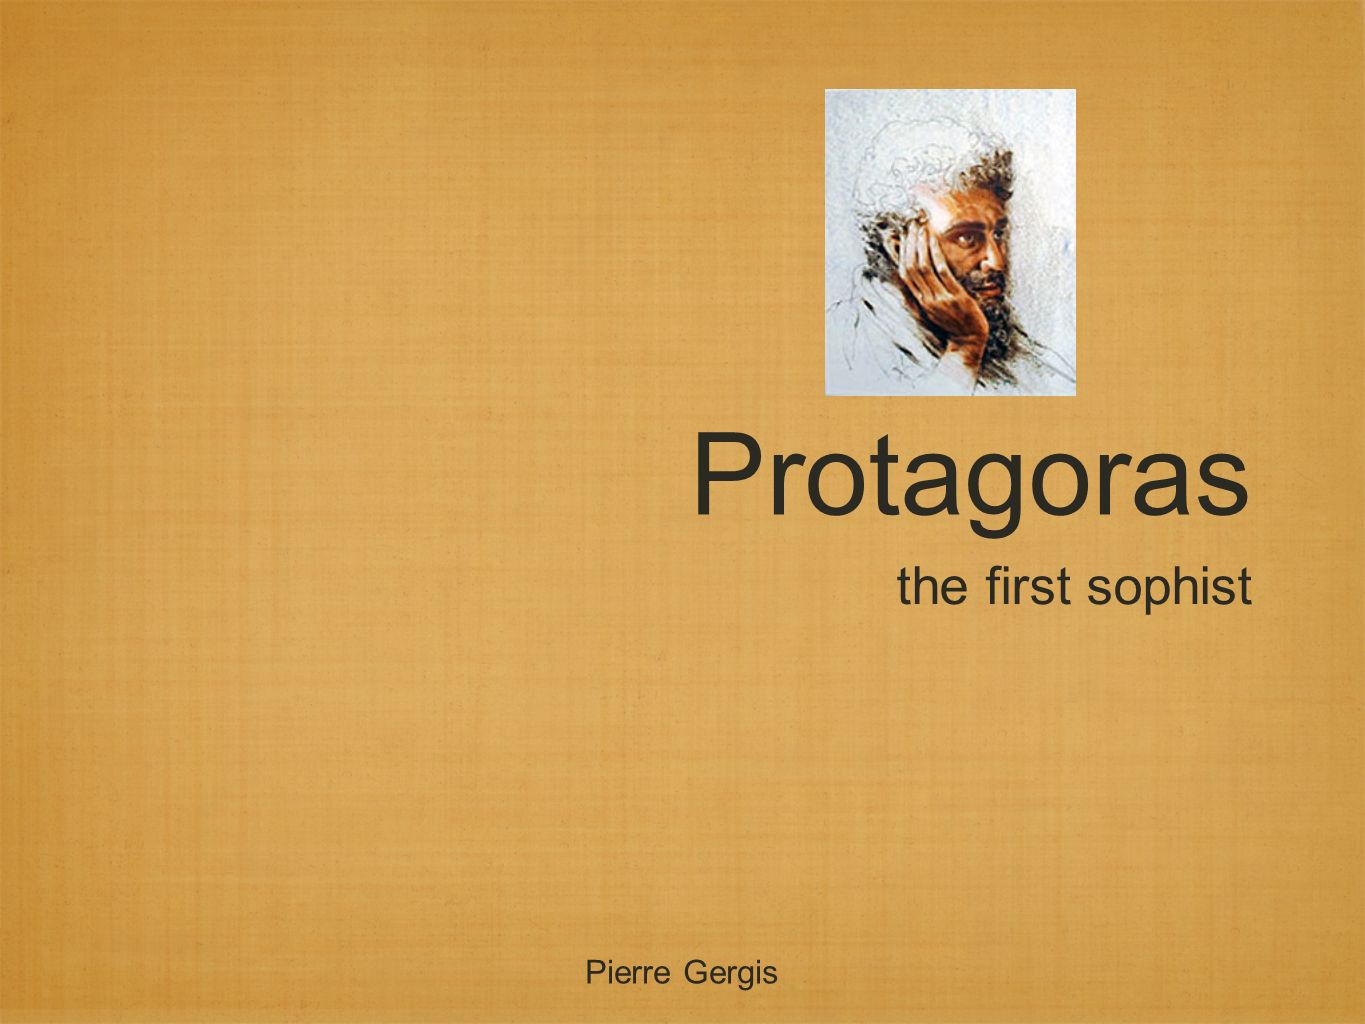 The agnosticism of Protagoras [1]